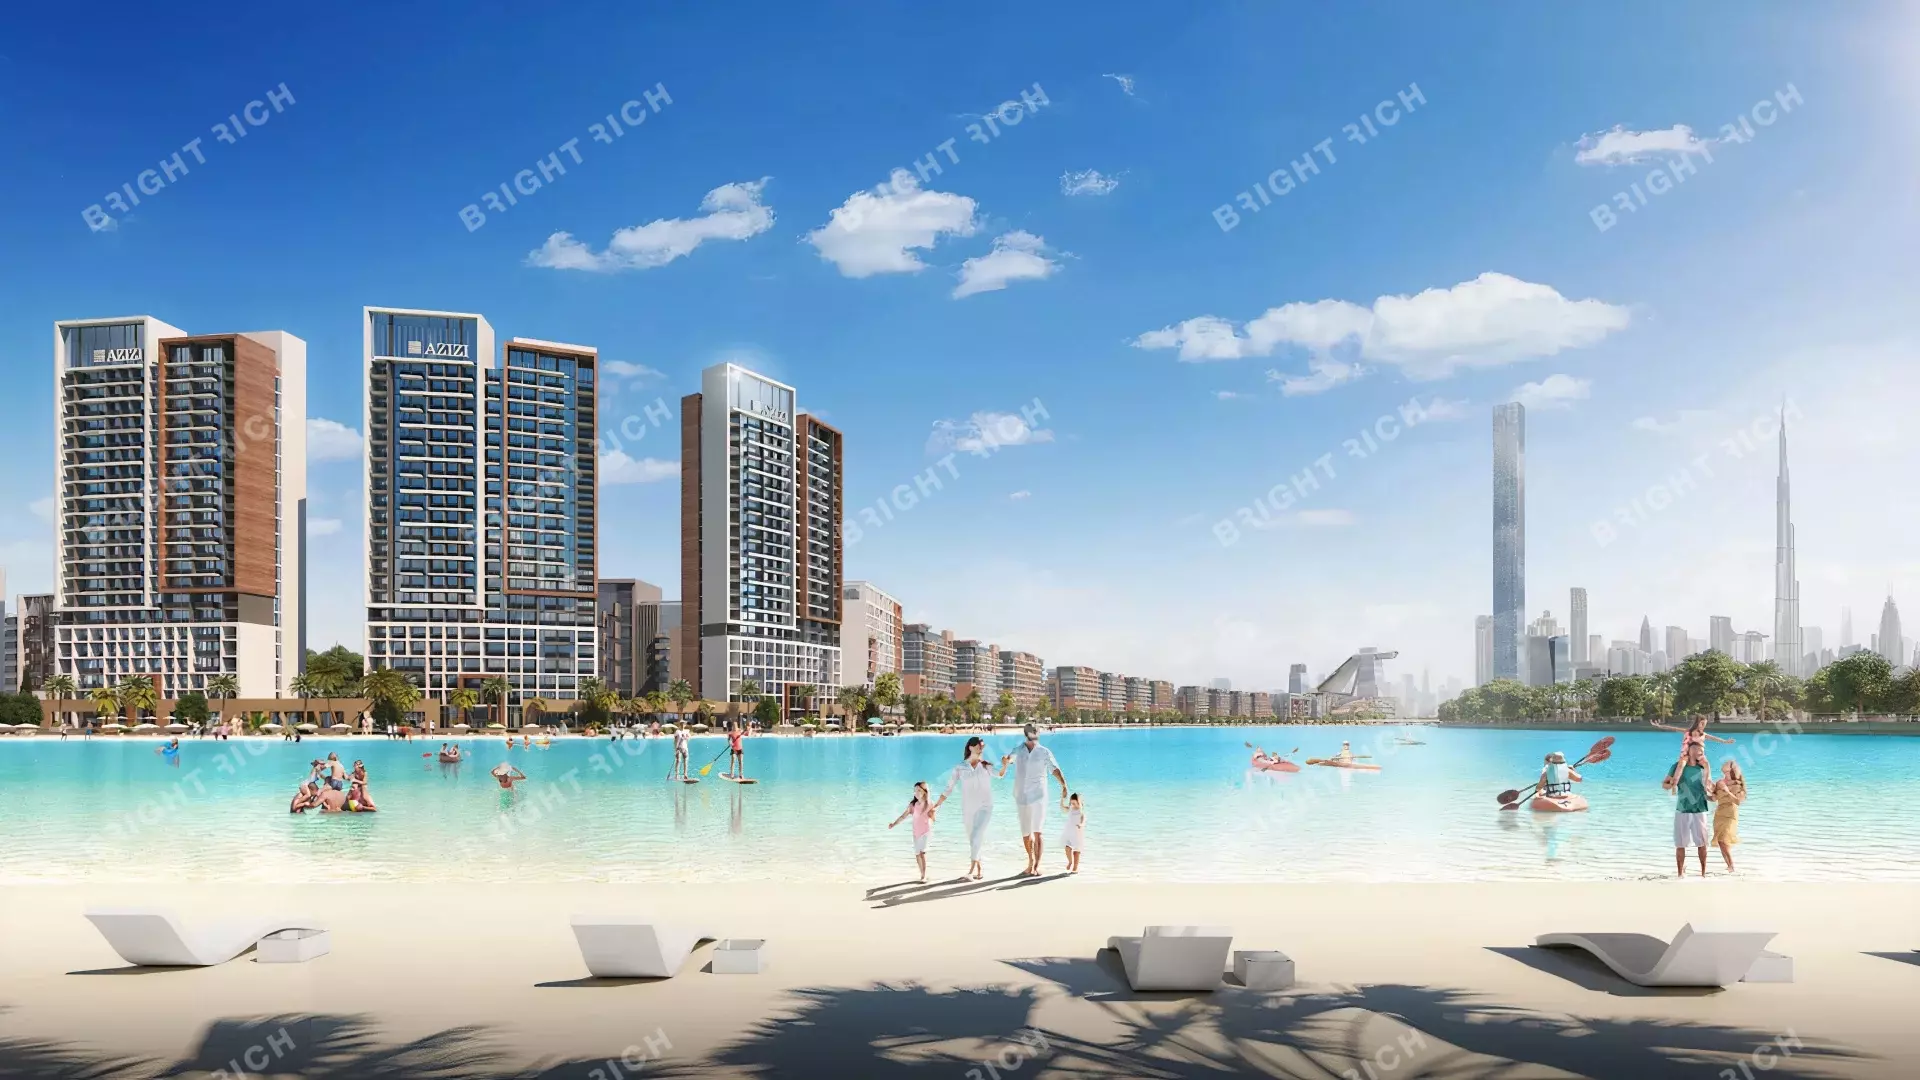 Azizi Riviera Building 14, apart complex in Dubai - 1